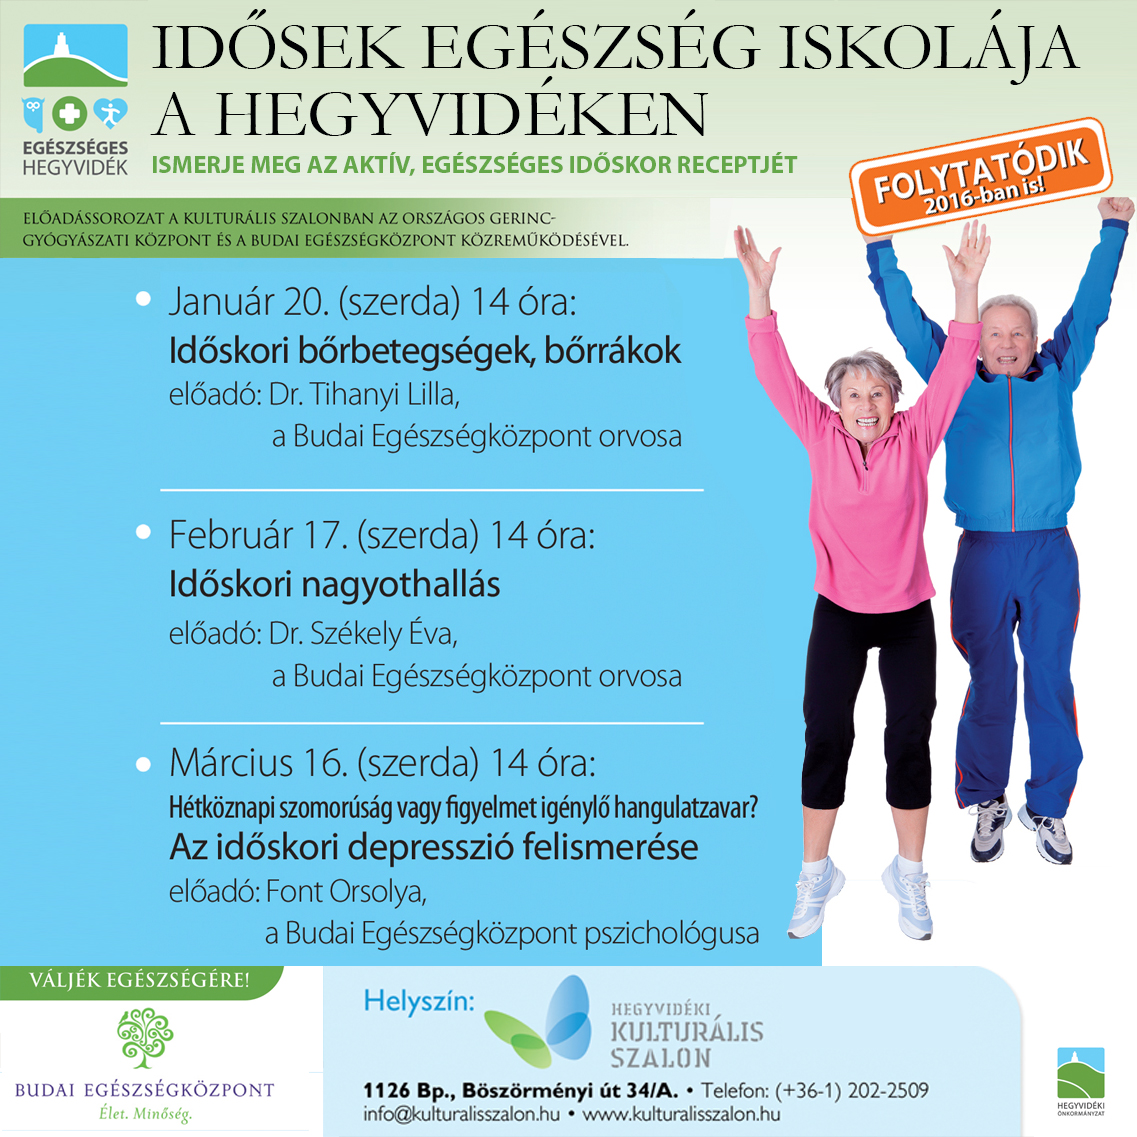 Idősek Egészség Iskolája, vagyis az Országos Gerincgyógyászati Központ és a Budai Egészségközpont közös előadássorozatának plakátja